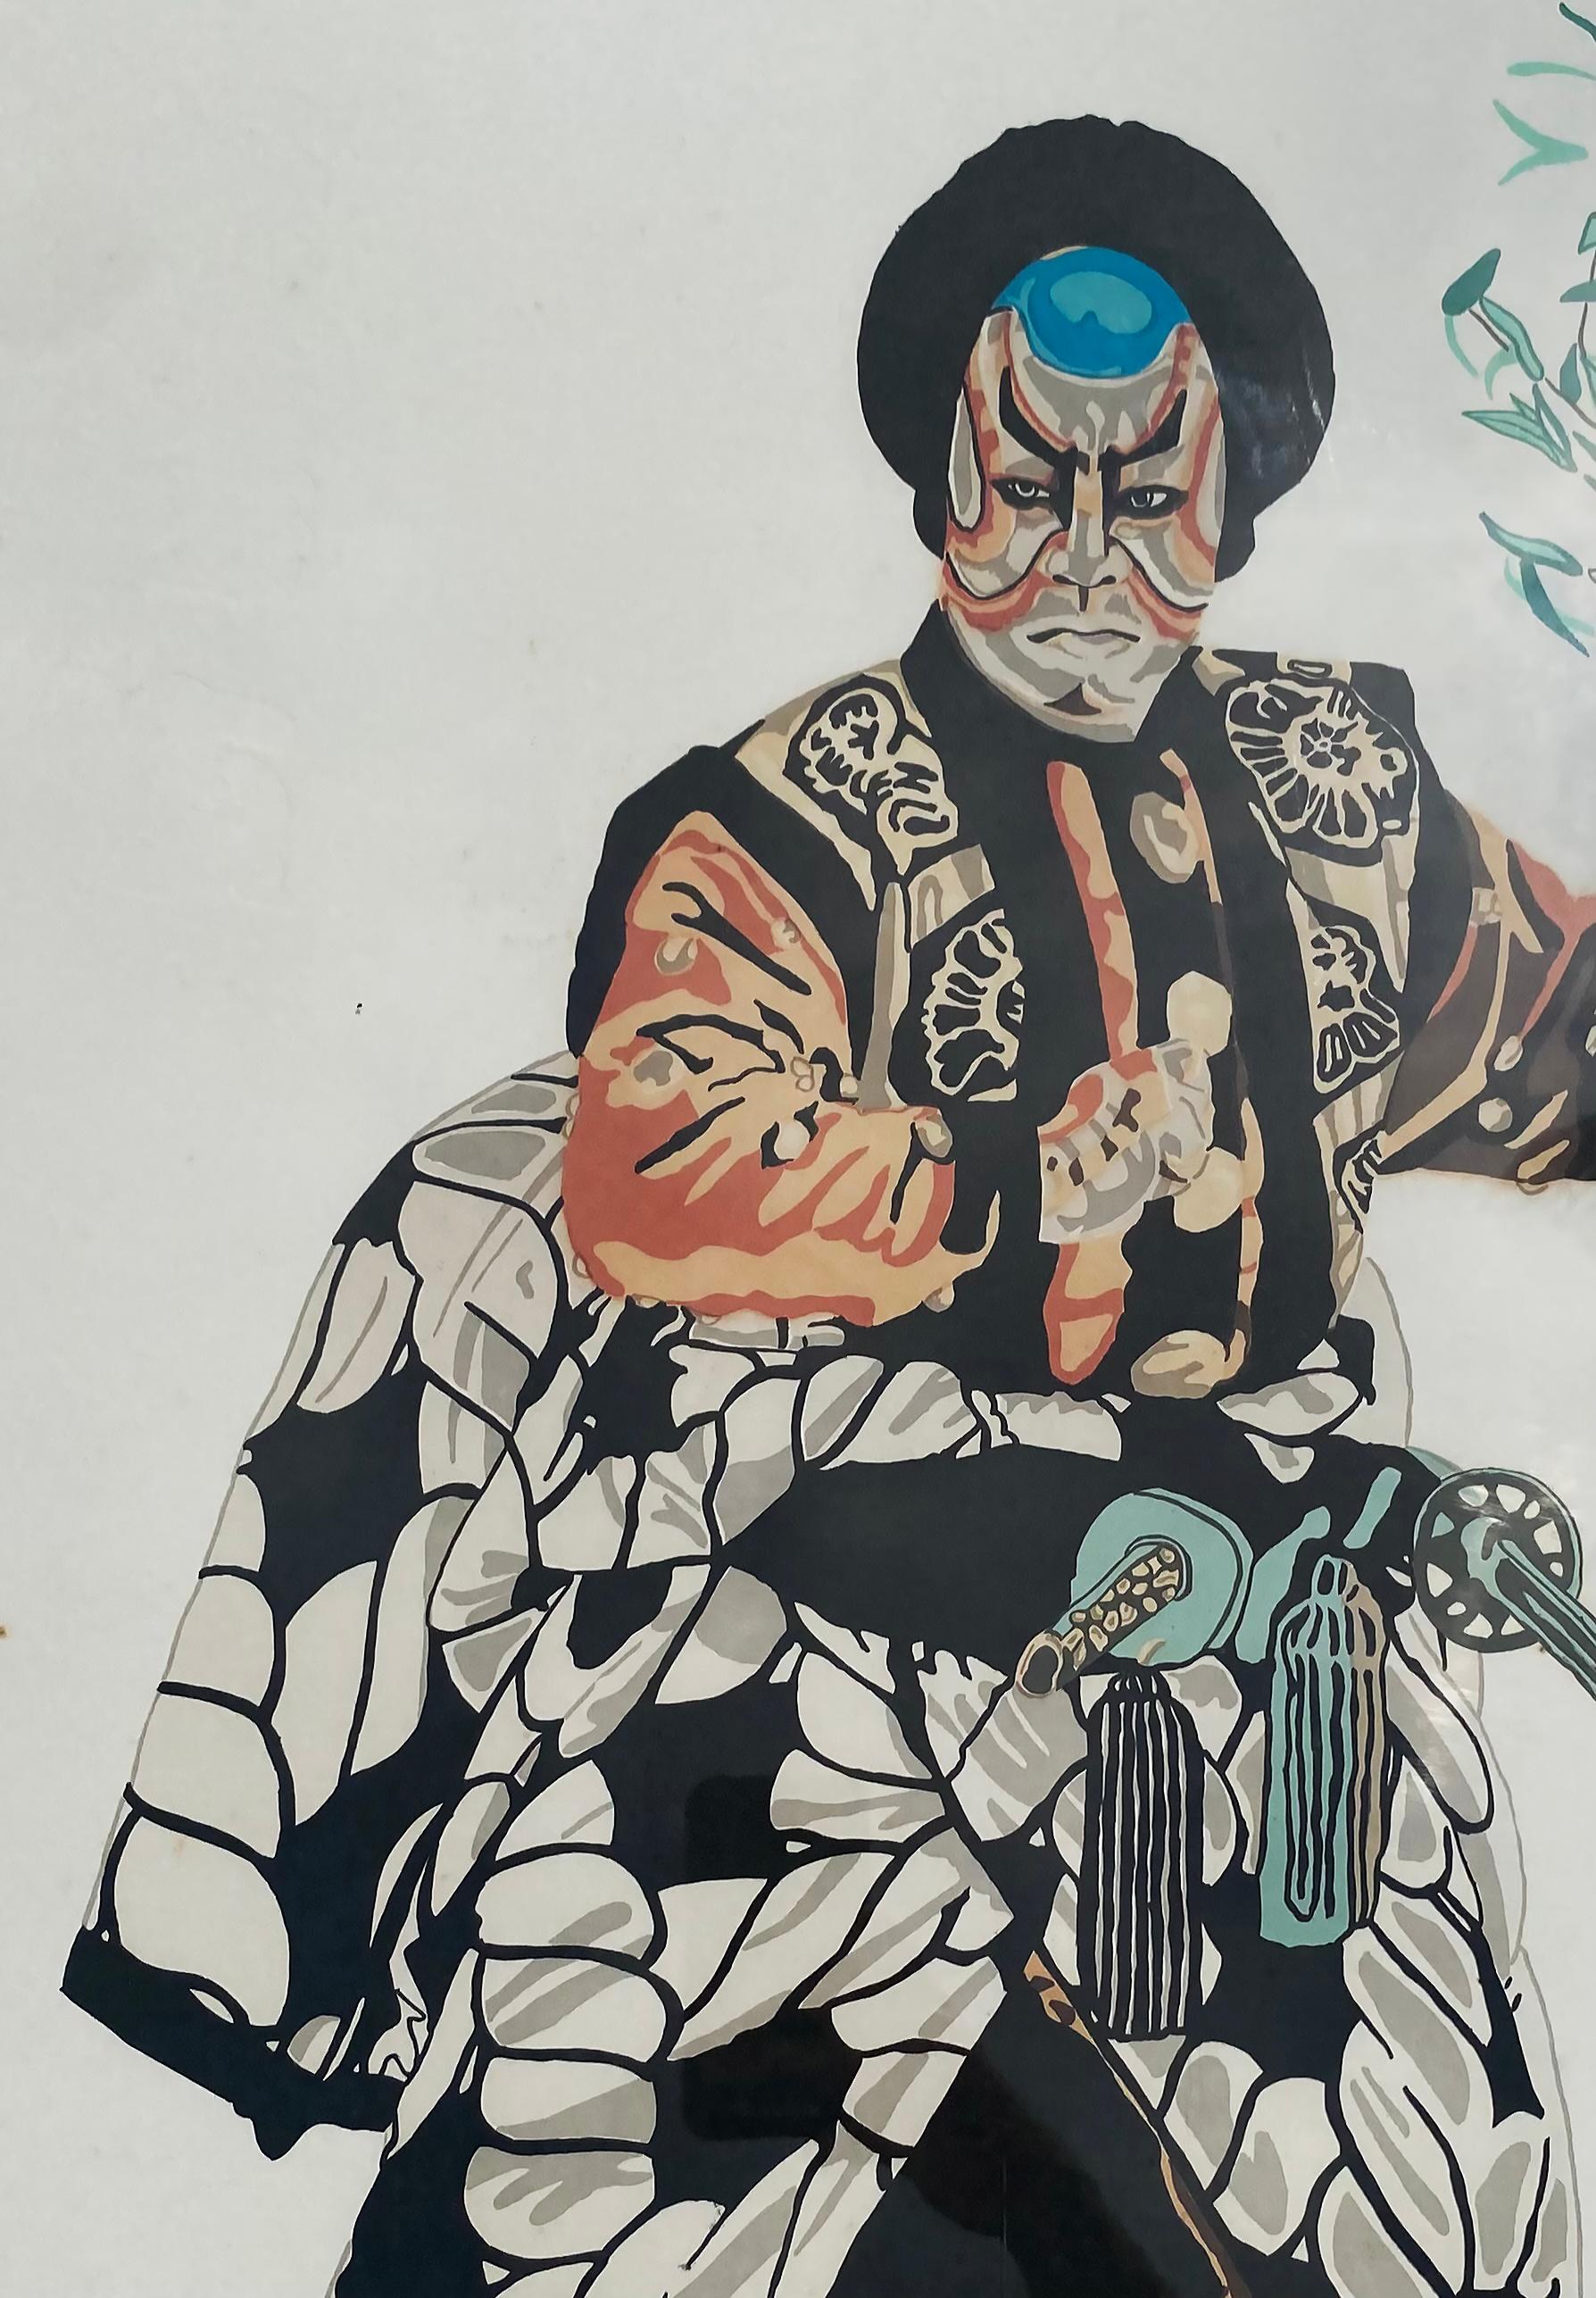 Farblithographie einer japanischen Kabuki-Theaterfigur, mit Bleistift signiert und nummeriert 

Zum Verkauf angeboten wird eine Farblithographie eines japanischen Kabuki Theater männliche Figur, die Bleistift vom Künstler gesungen und nummeriert